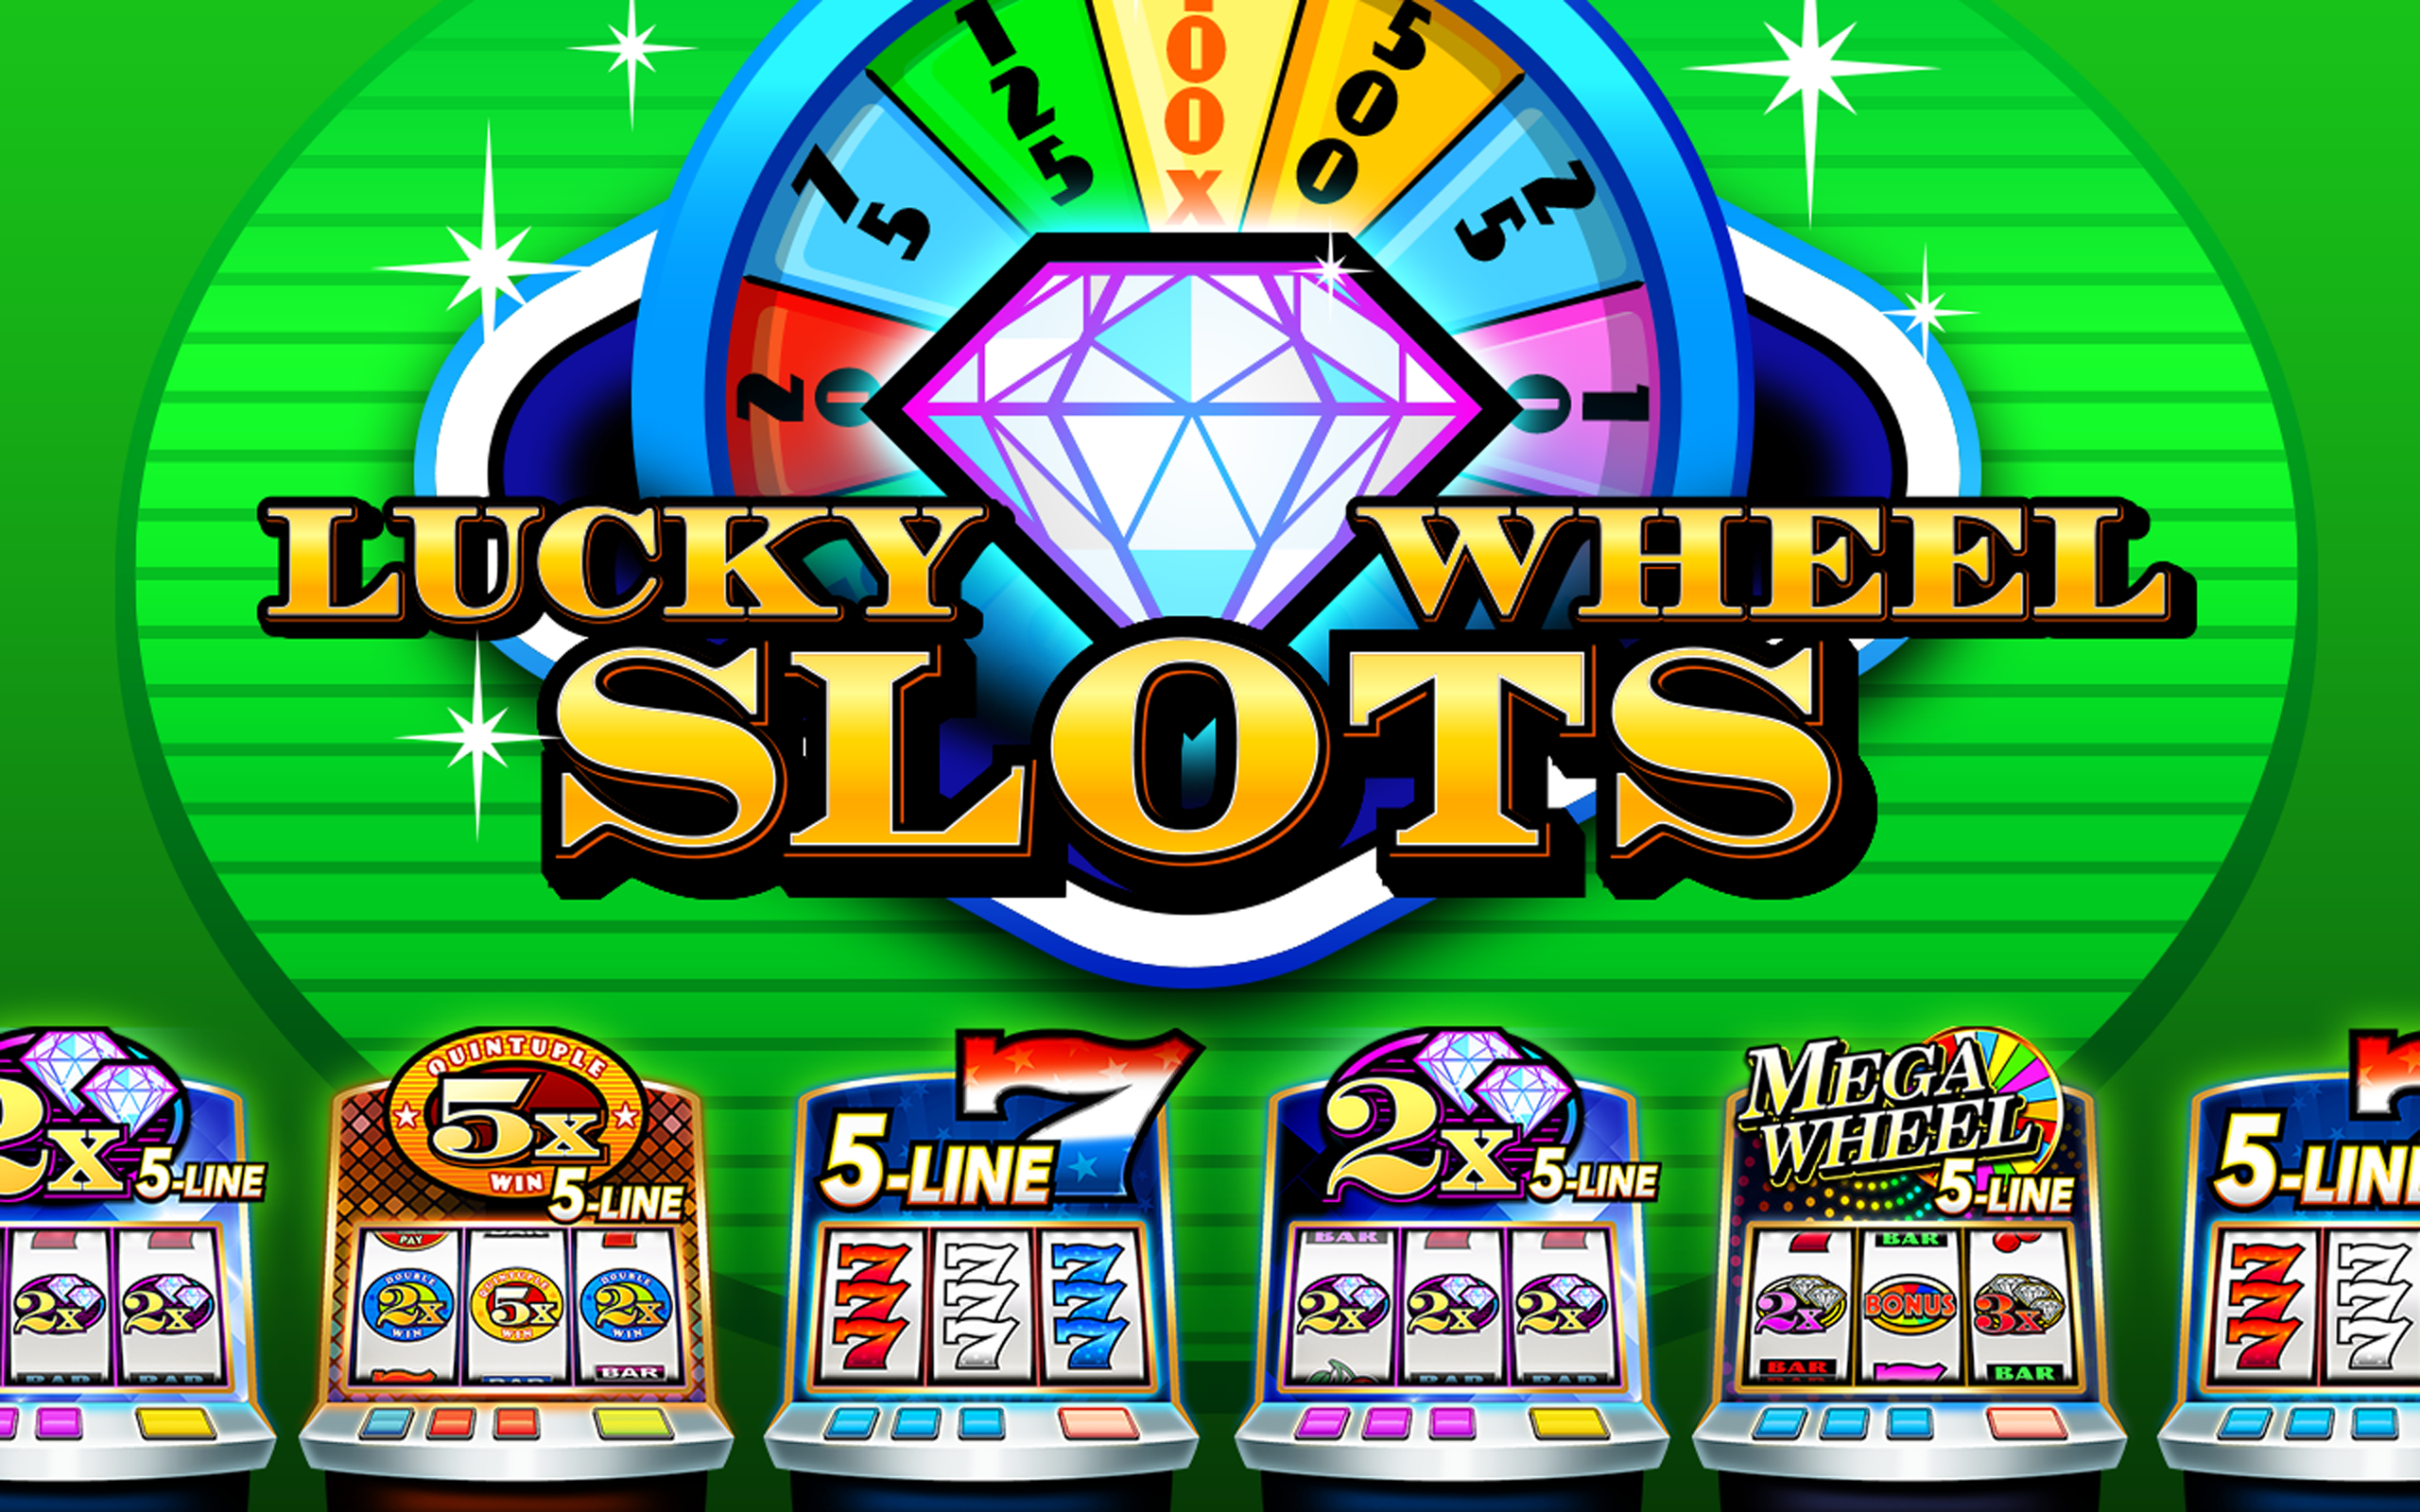 Löwen Play Casino Online Bonus Code